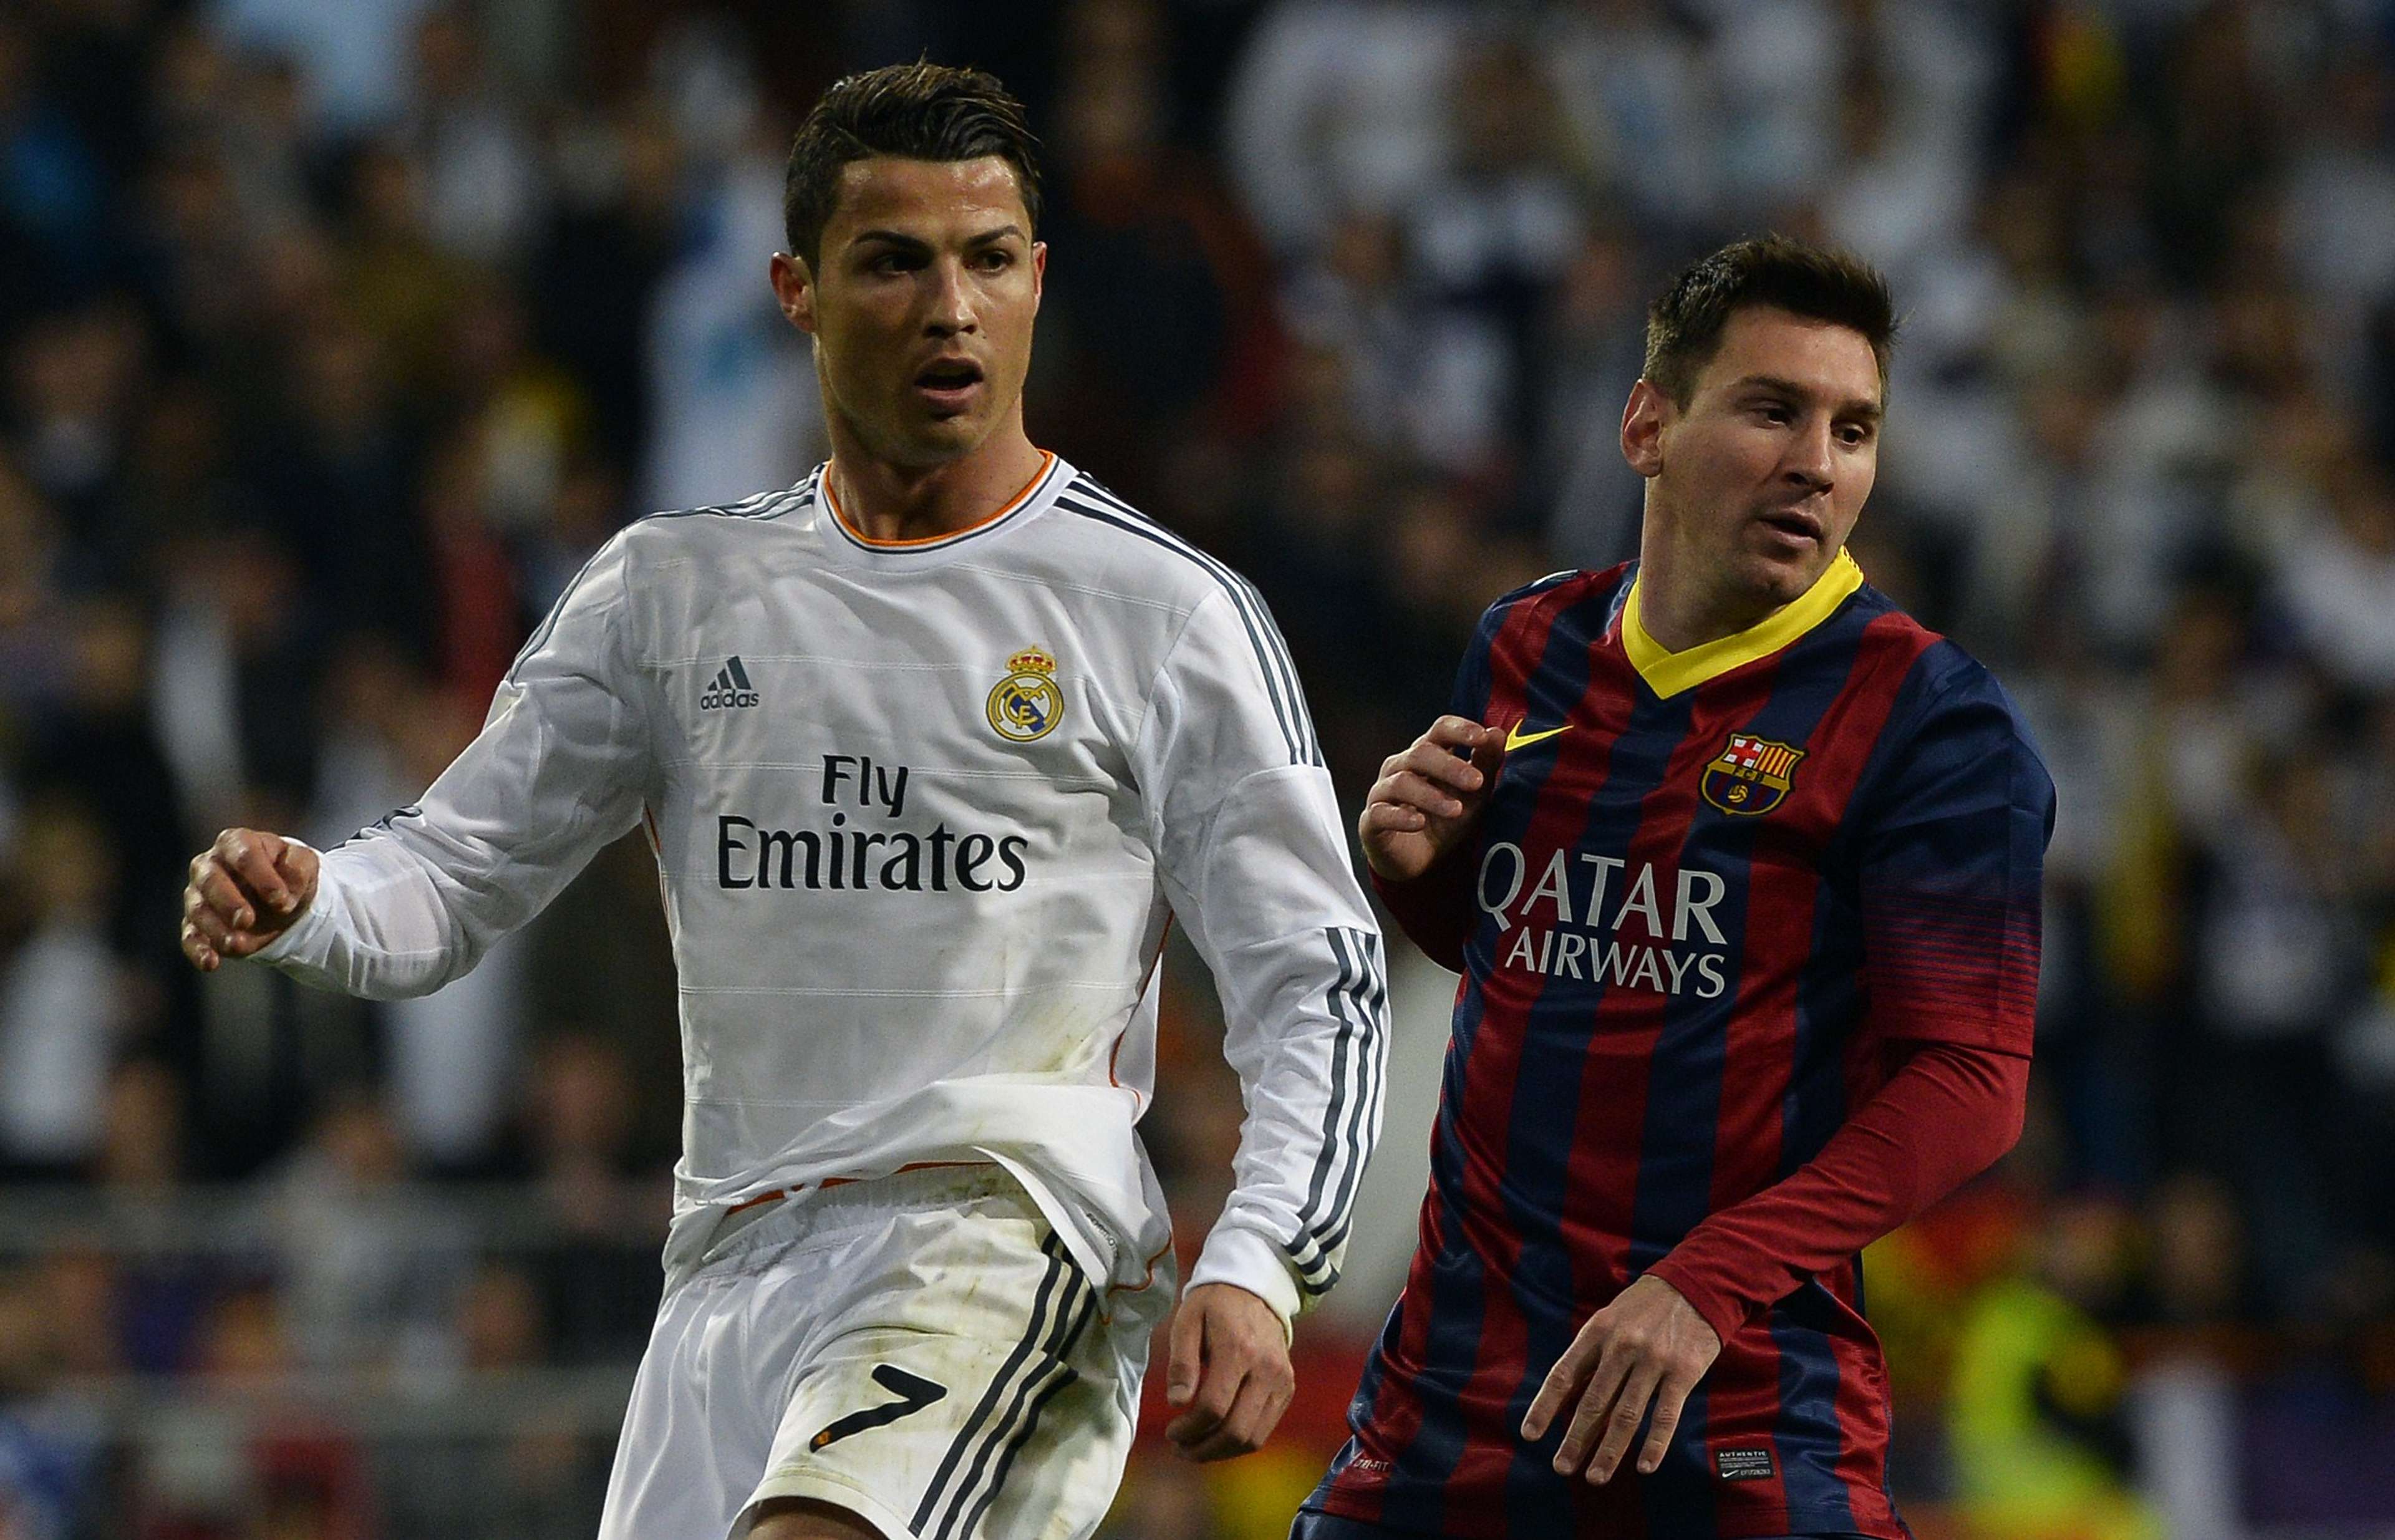 Real Madrid's Cristiano Ronaldo (L) and Barcelona's Lionel Messi